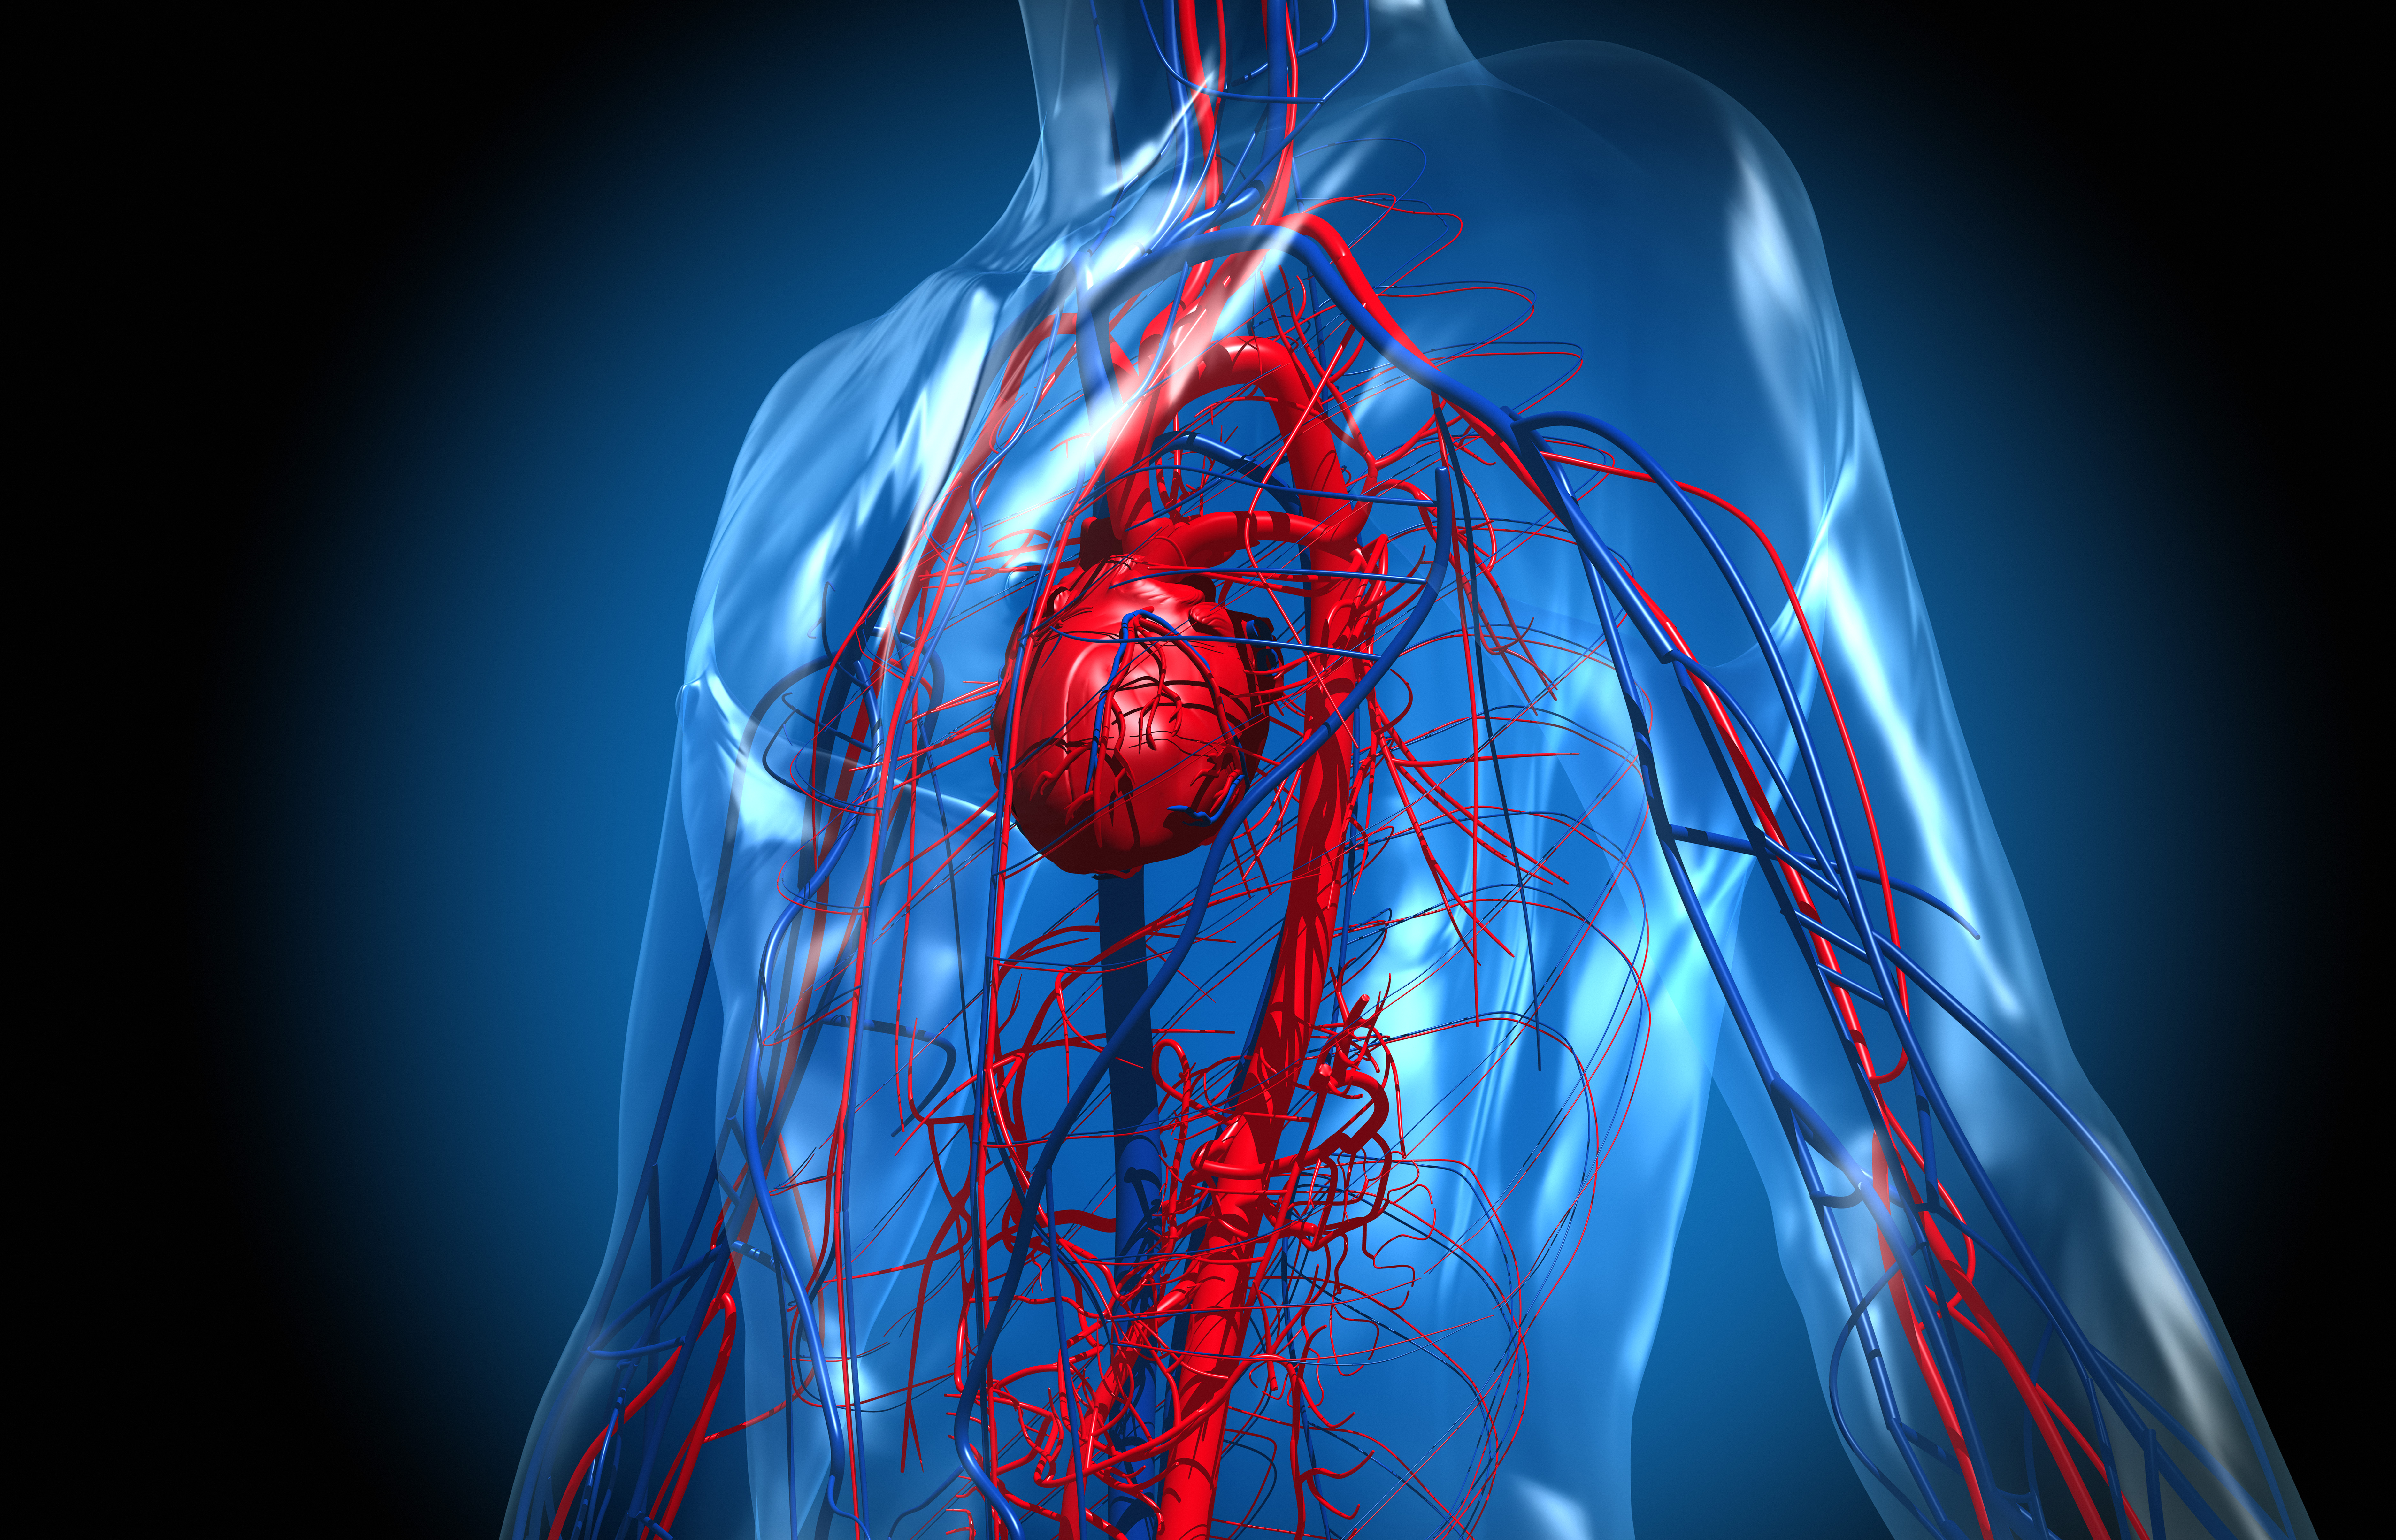 Por alteración de los niveles de colesterol se puede producir placas en las arterias e inflamación que conducen a la enfermedad cardiovascular (Getty)